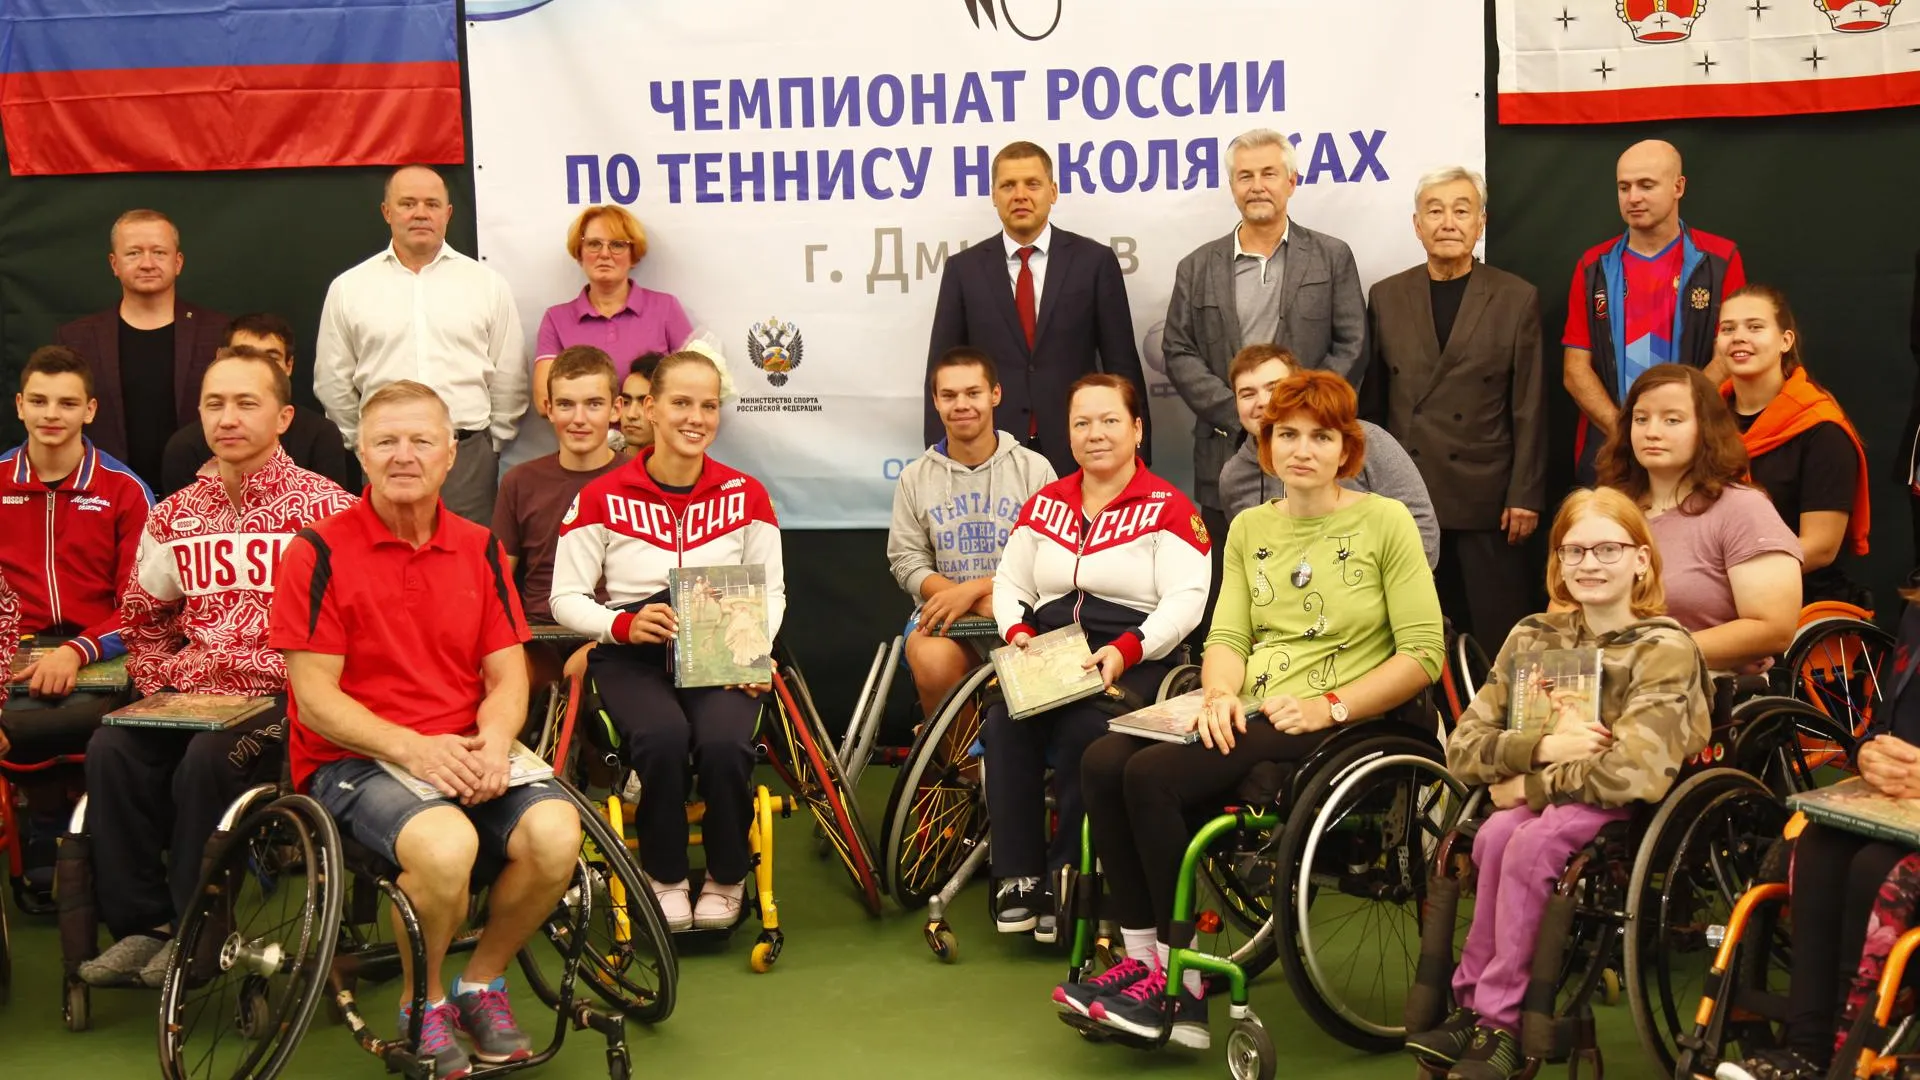 Чемпионат России по теннису на колясках проходит в Дмитровском округе